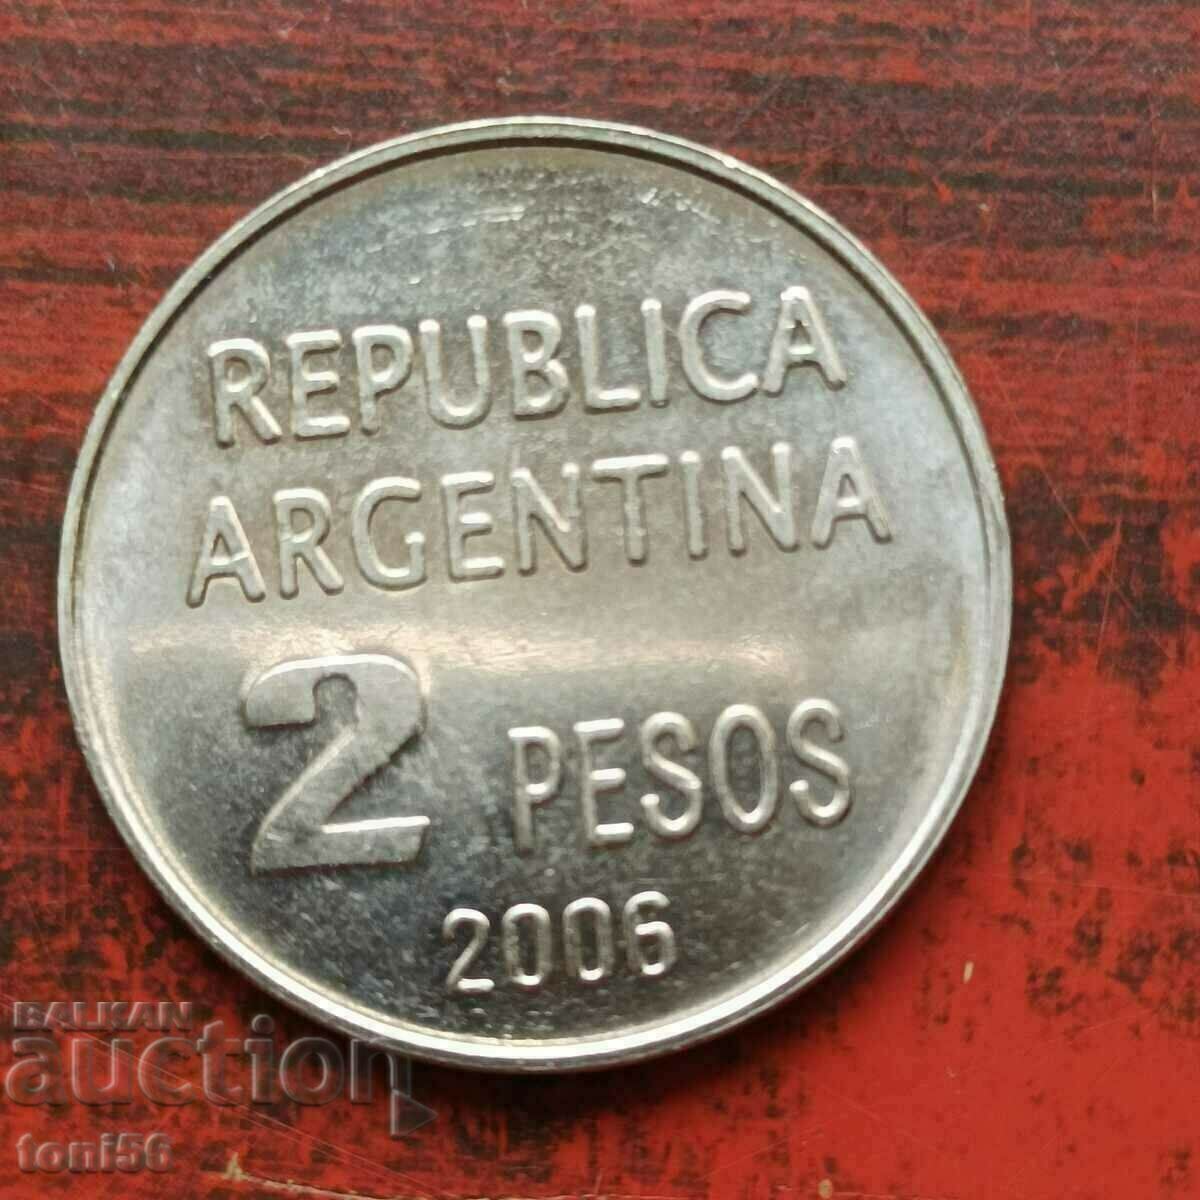 Argentina 2 pesos 2006 UNC comemorativ